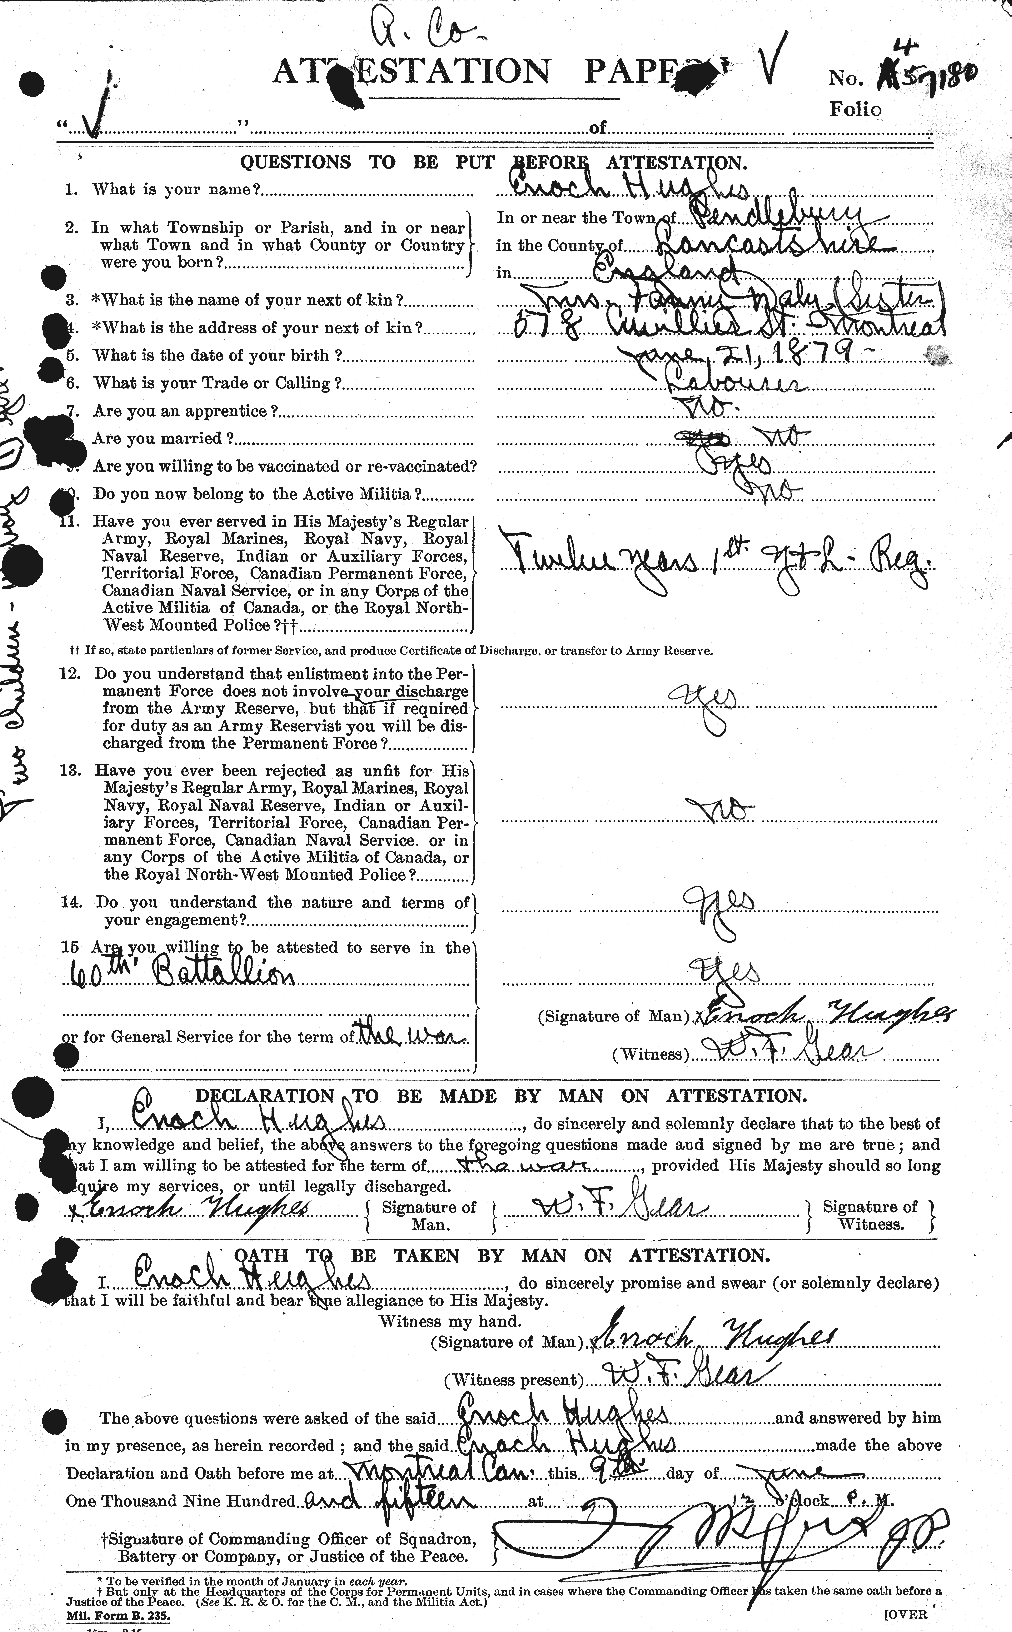 Dossiers du Personnel de la Première Guerre mondiale - CEC 402707a